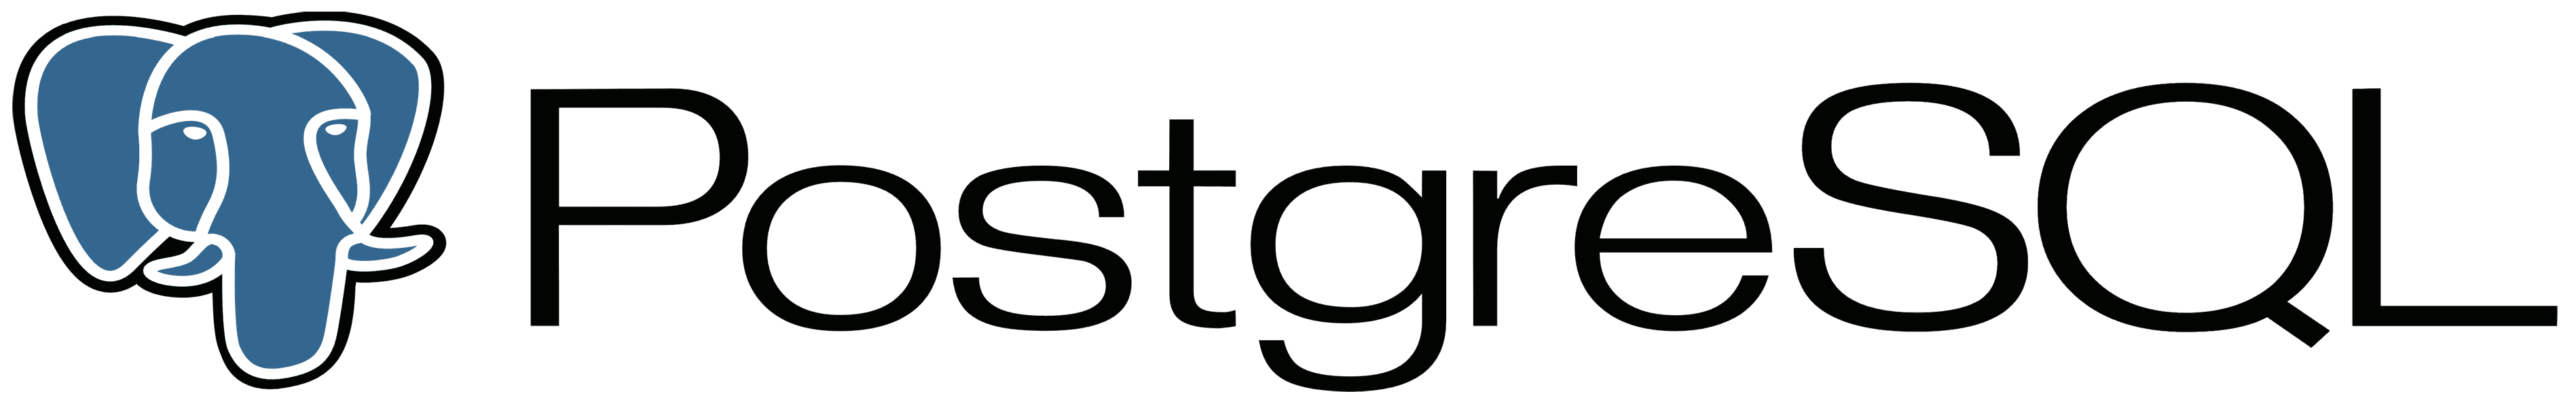 PostgreSQL vendor logo